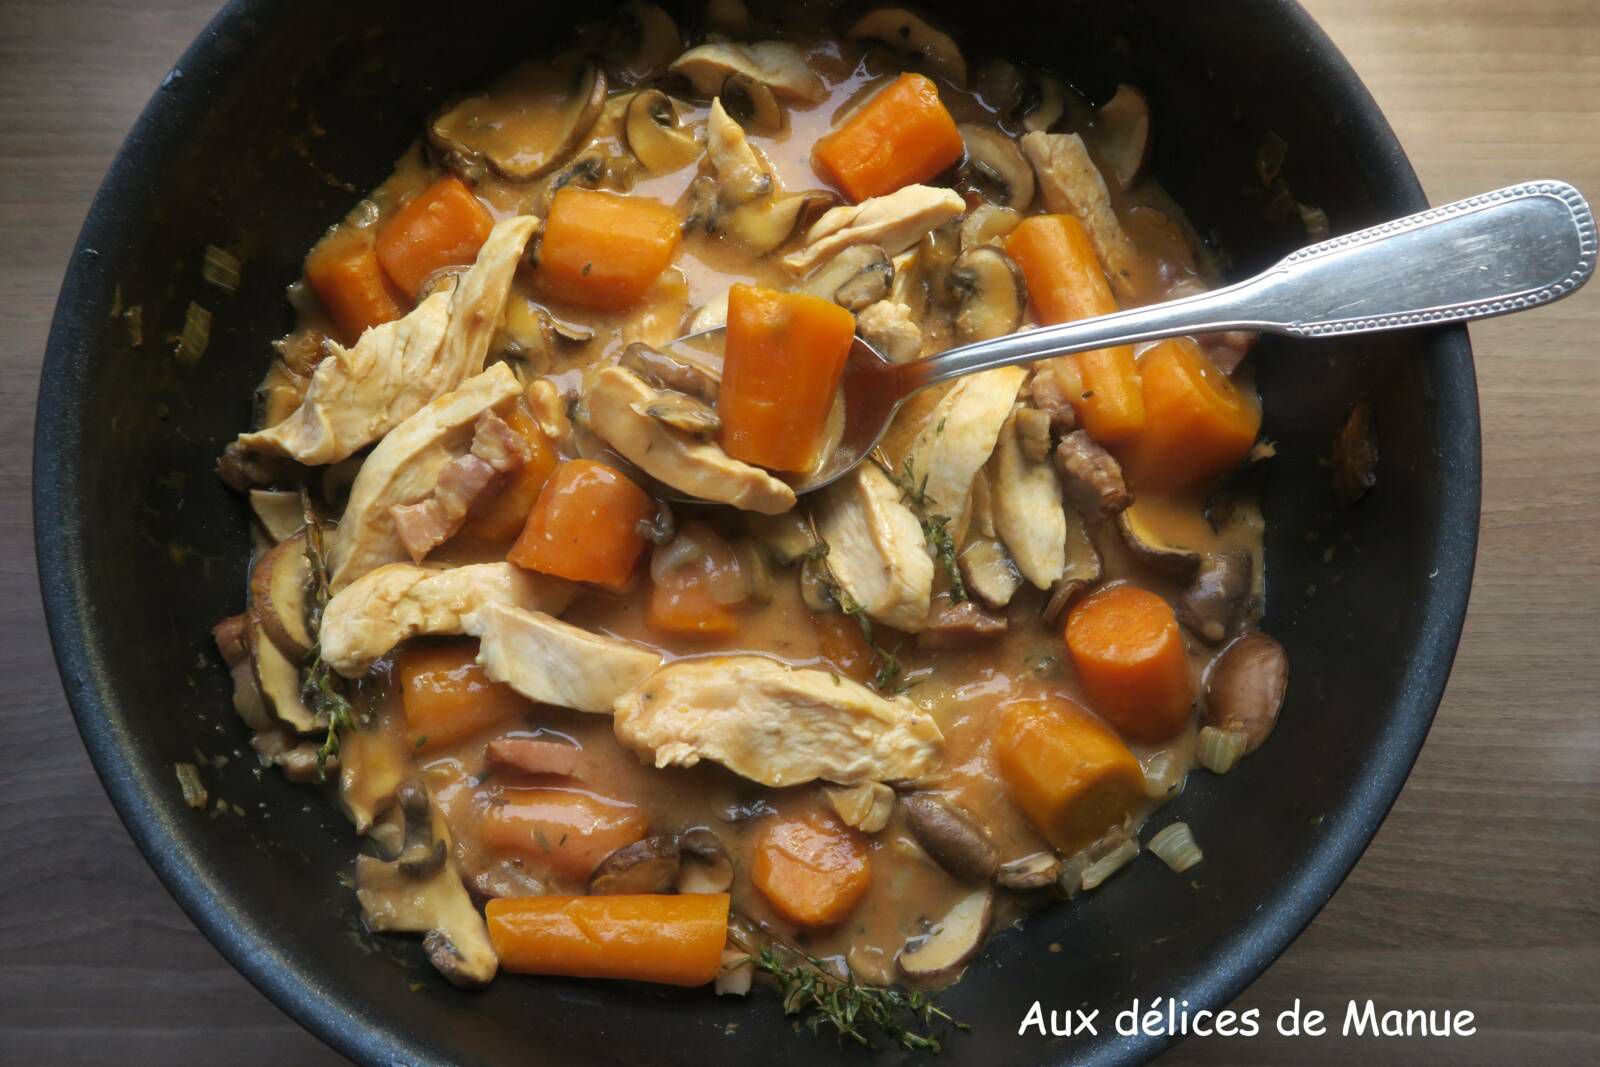 blanquette, fricassée, poulet, blanc de poulet, carottes, champignons, recette facile, recette pas cher, recette rapide